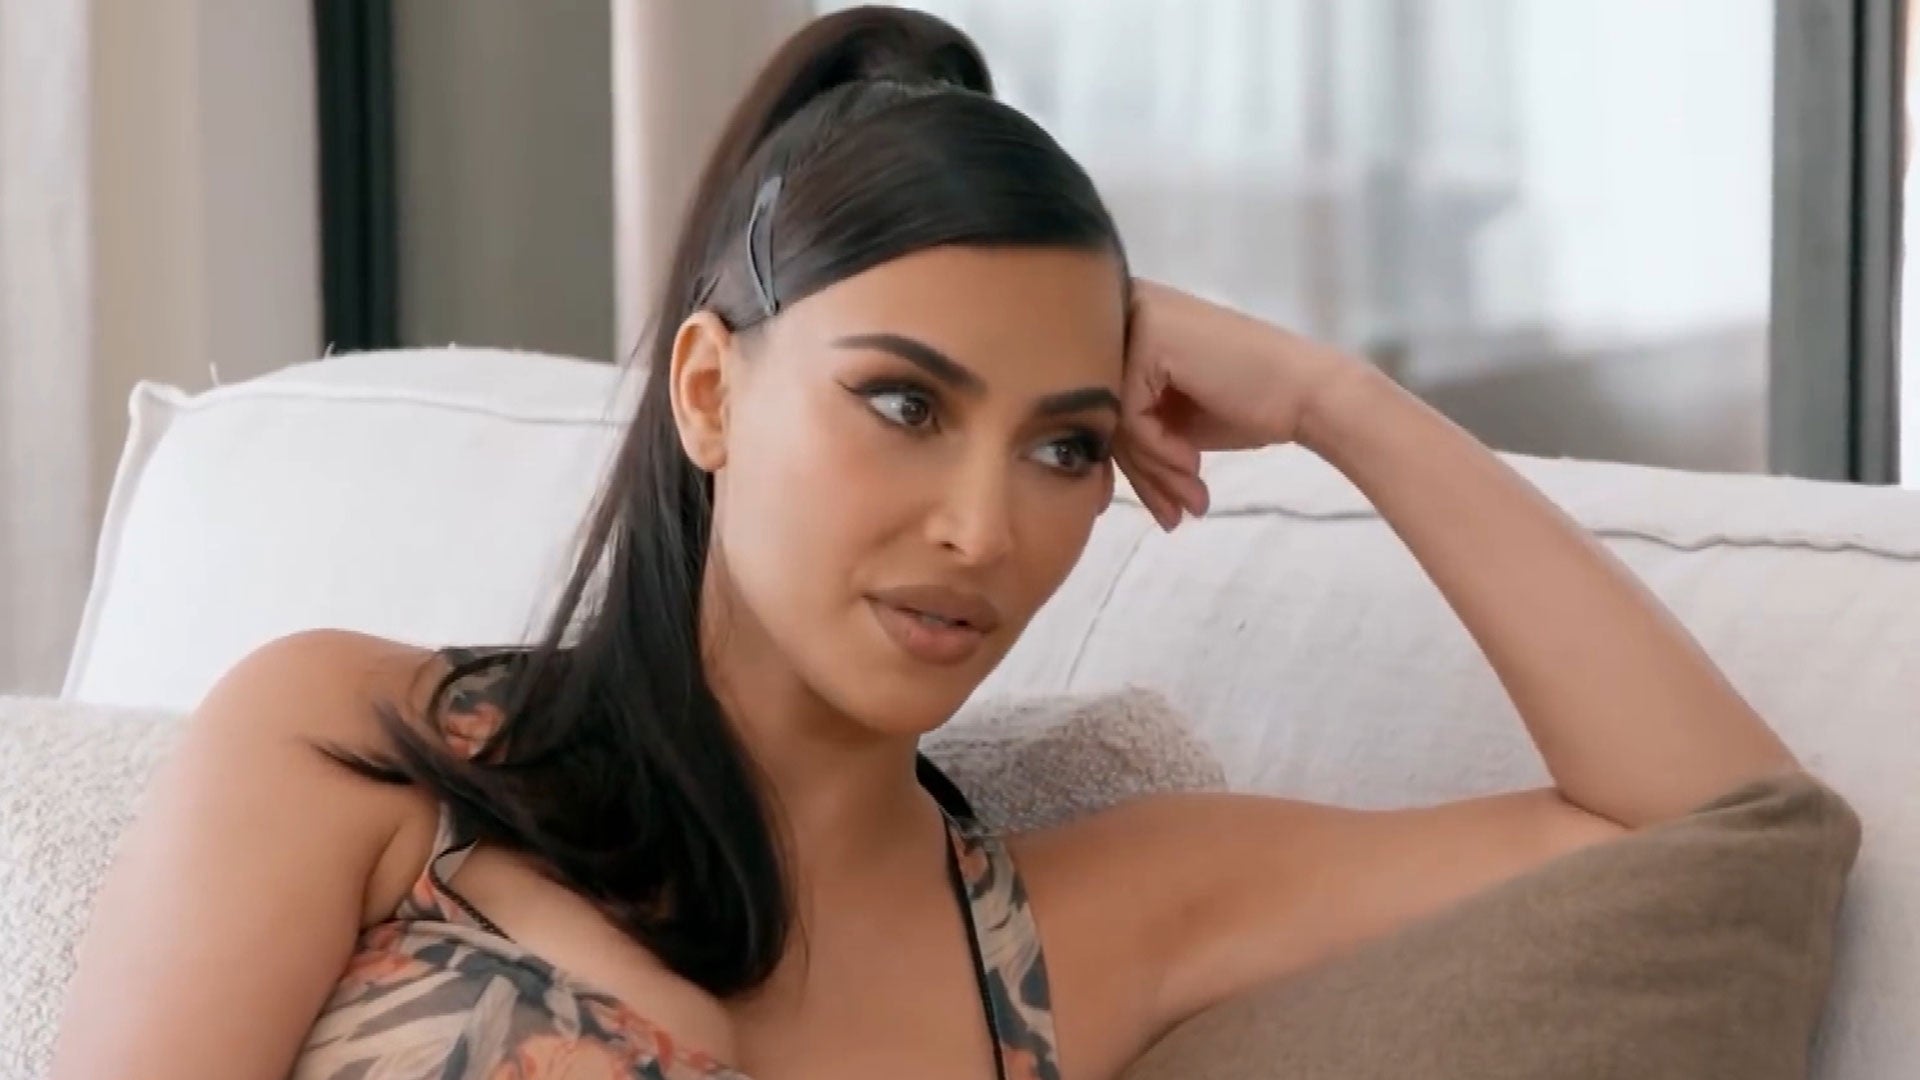 Kourtney Kardashian Calls Out Kendall Jenner for Returning B-Day Gift